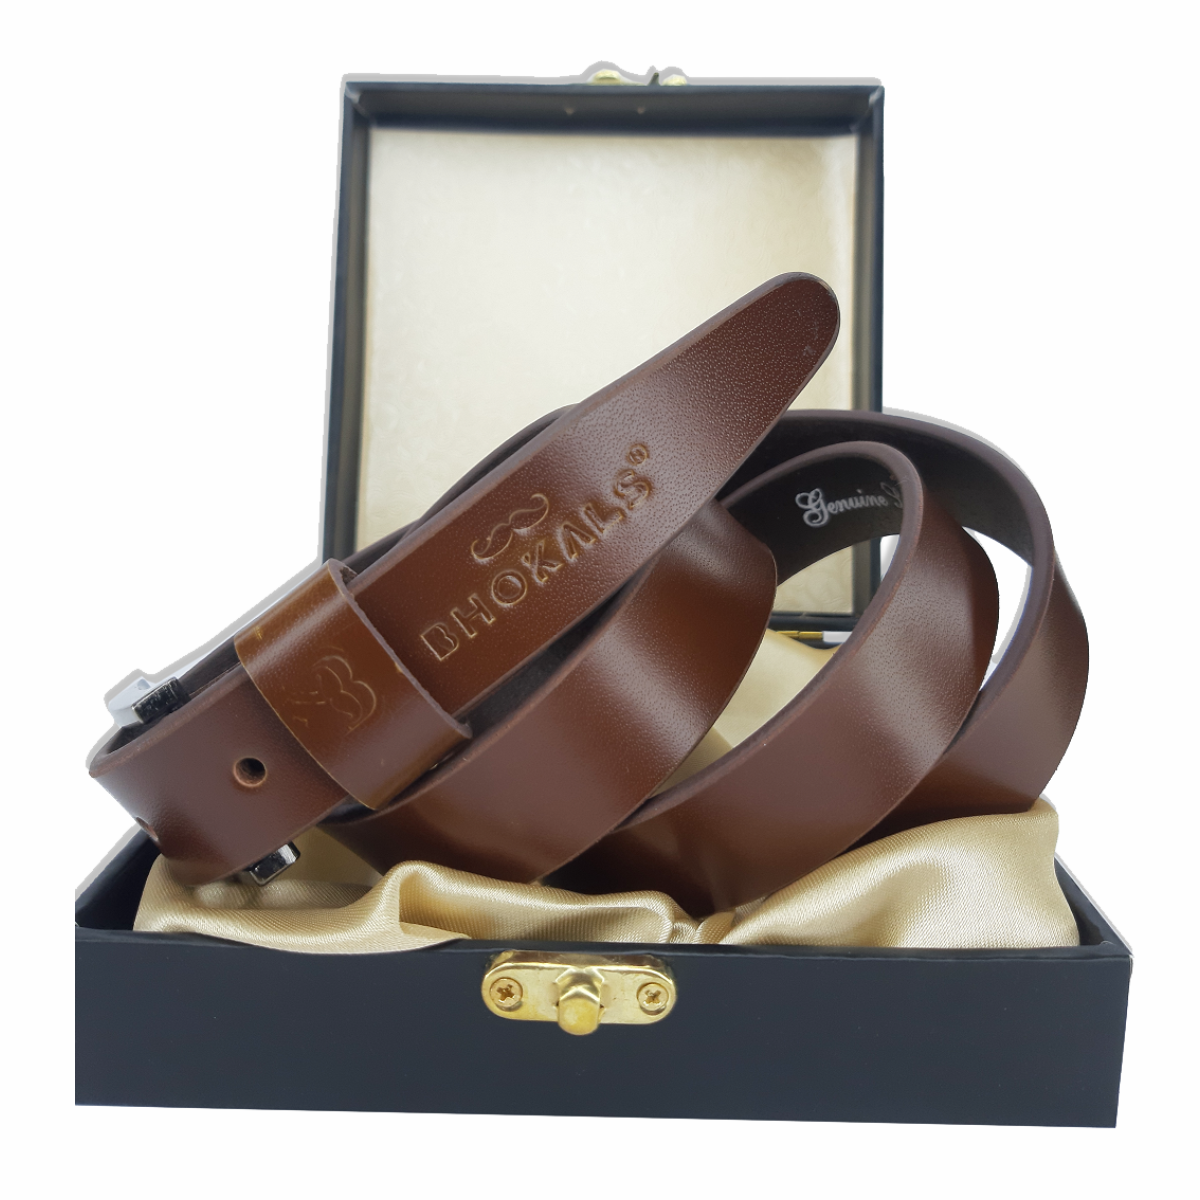 Bhokals Women Brown Leather Belt